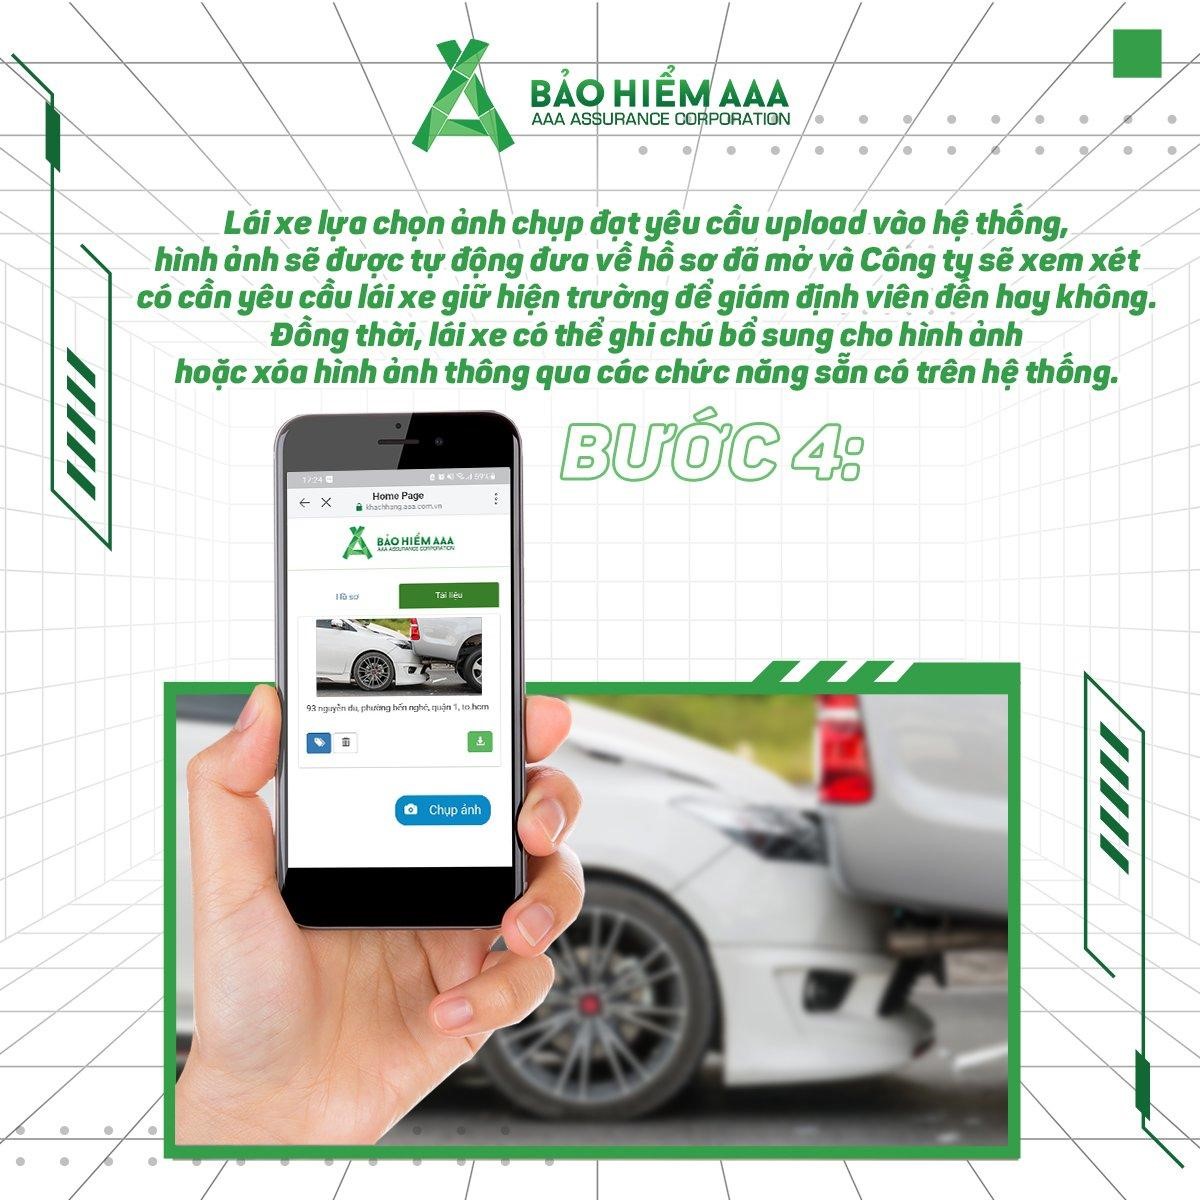 Bảo hiểm AAA kích hoạt tính năng khai báo tai nạn online, rút ngắn thời gian và quy trình giám định bồi thường đối với xe cơ giới - ảnh 5